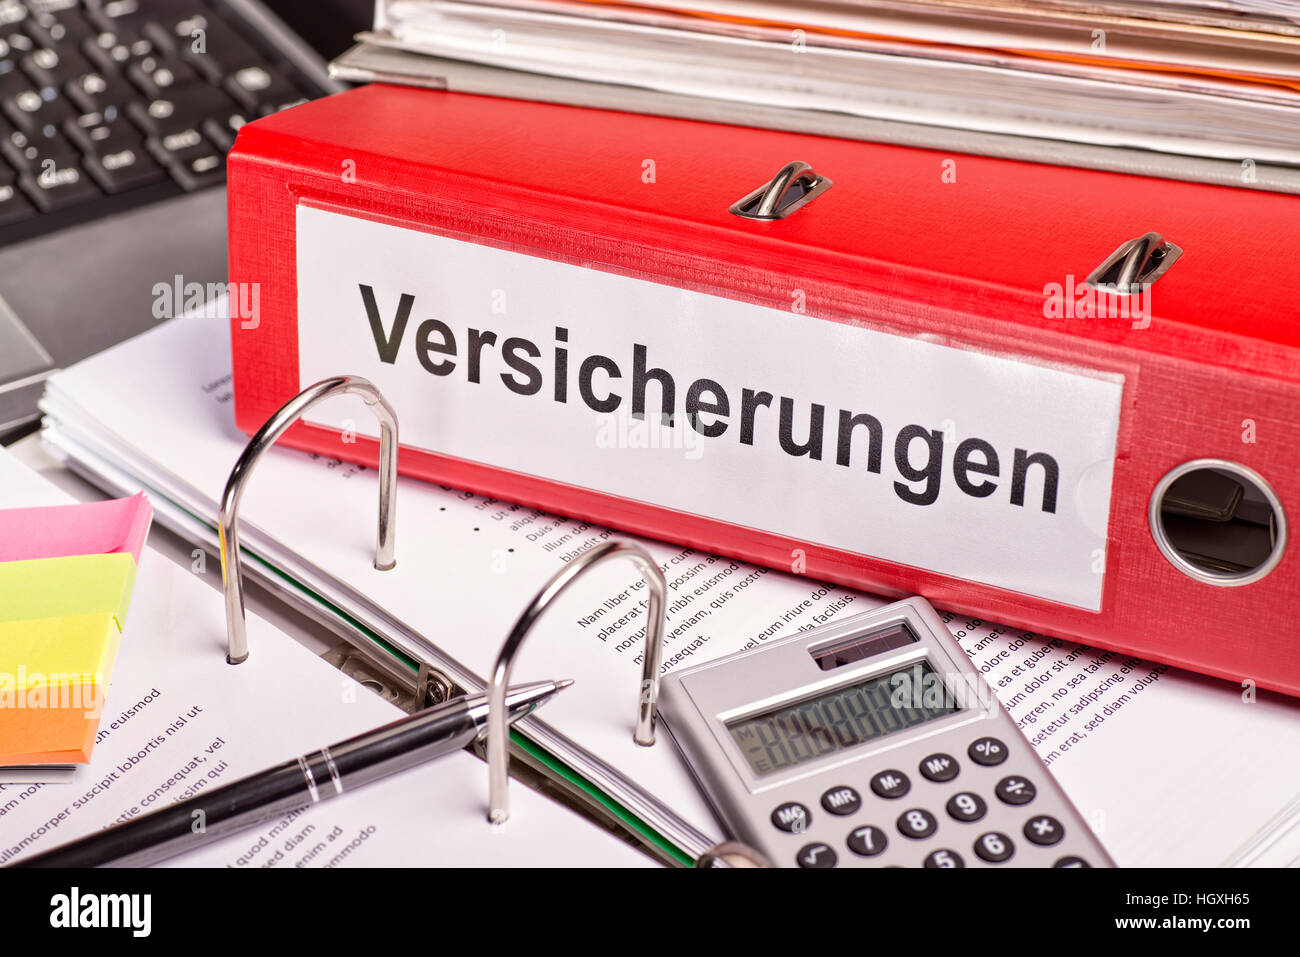 Red file cartella con l'etichetta "Versicherungen' per le assicurazioni. Foto Stock